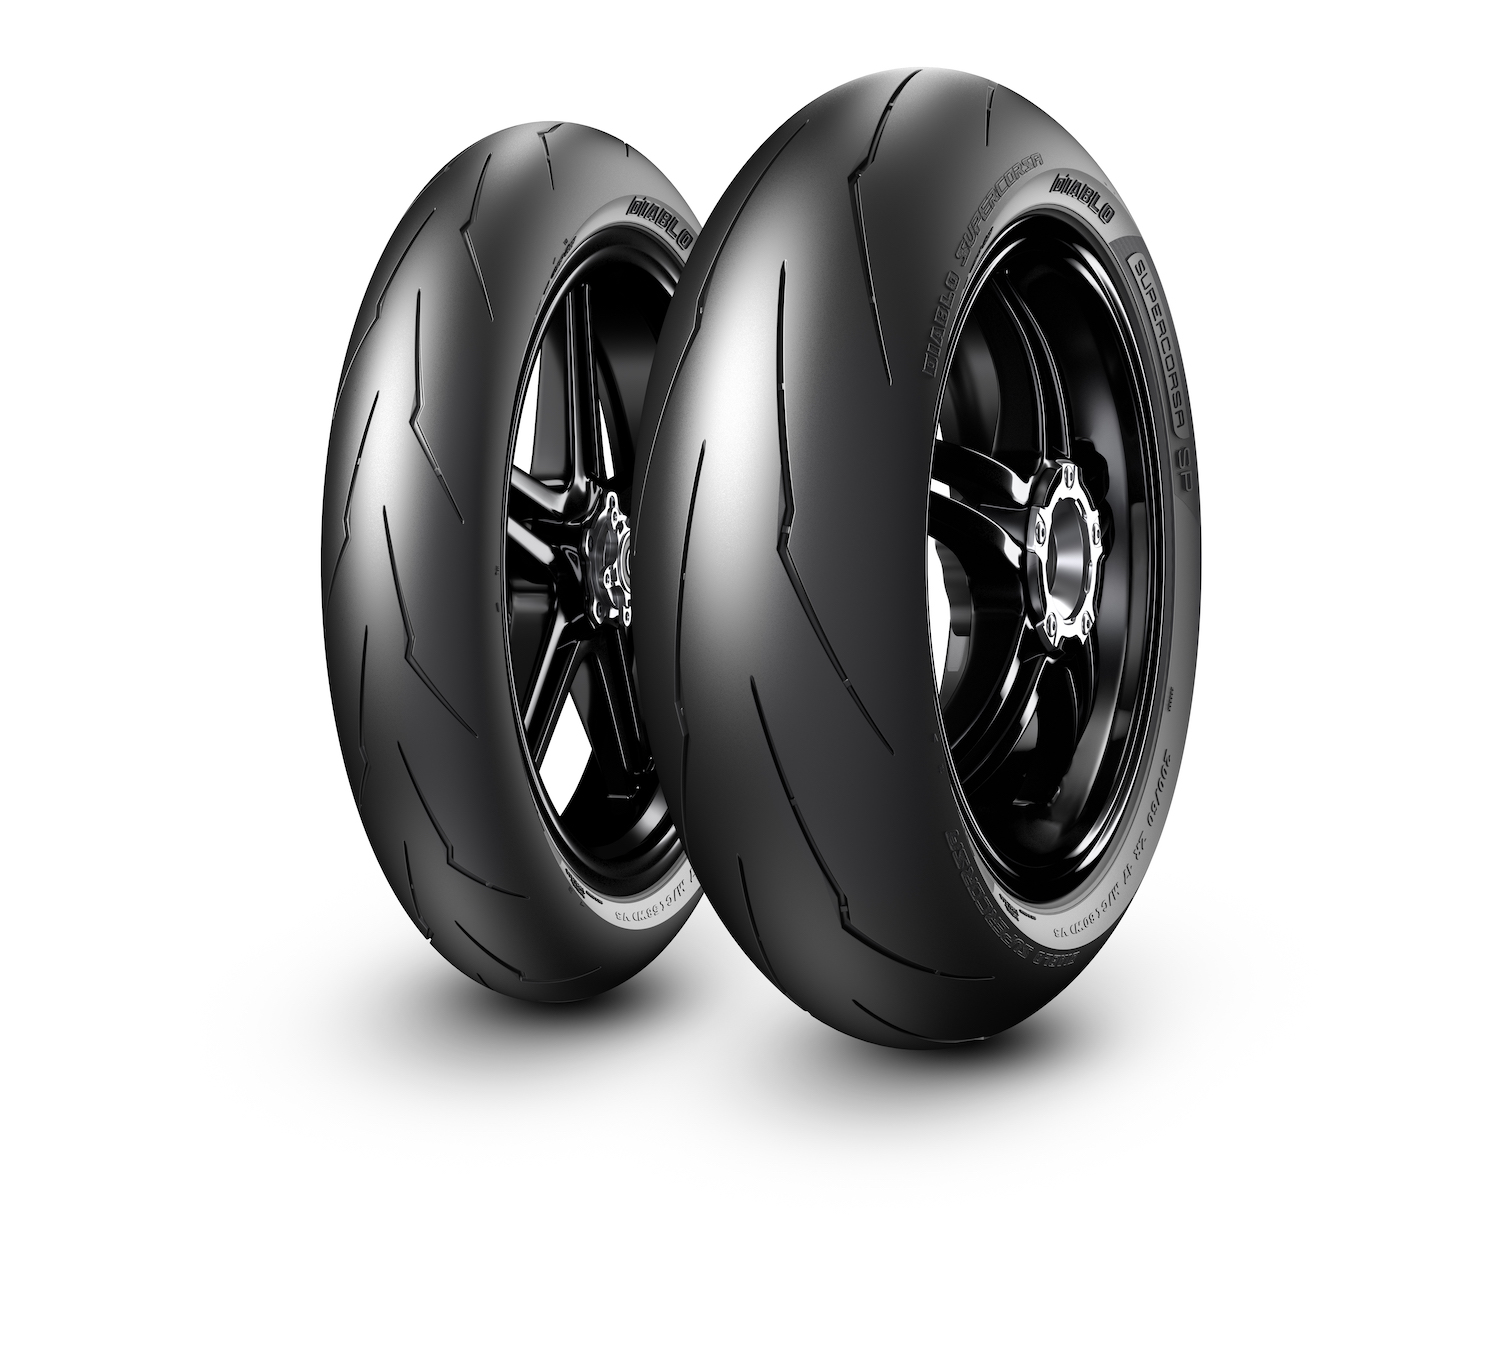 Pirelli Diablo™ Supercorsa V3 胎組。